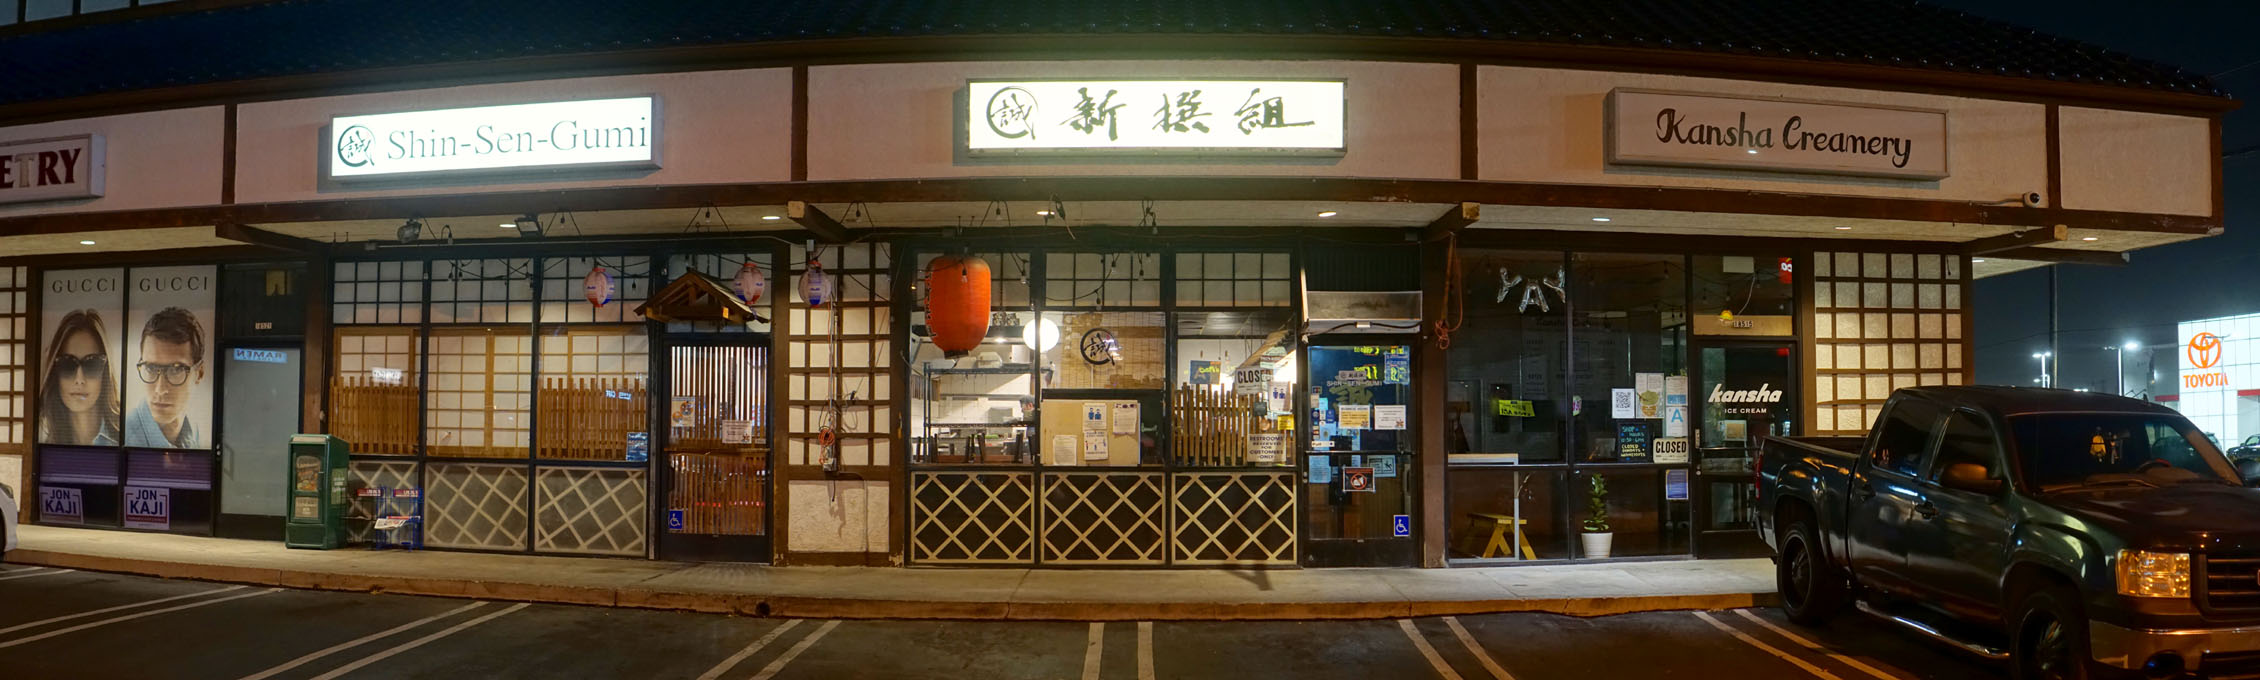 Shin-Sen-Gumi Exterior